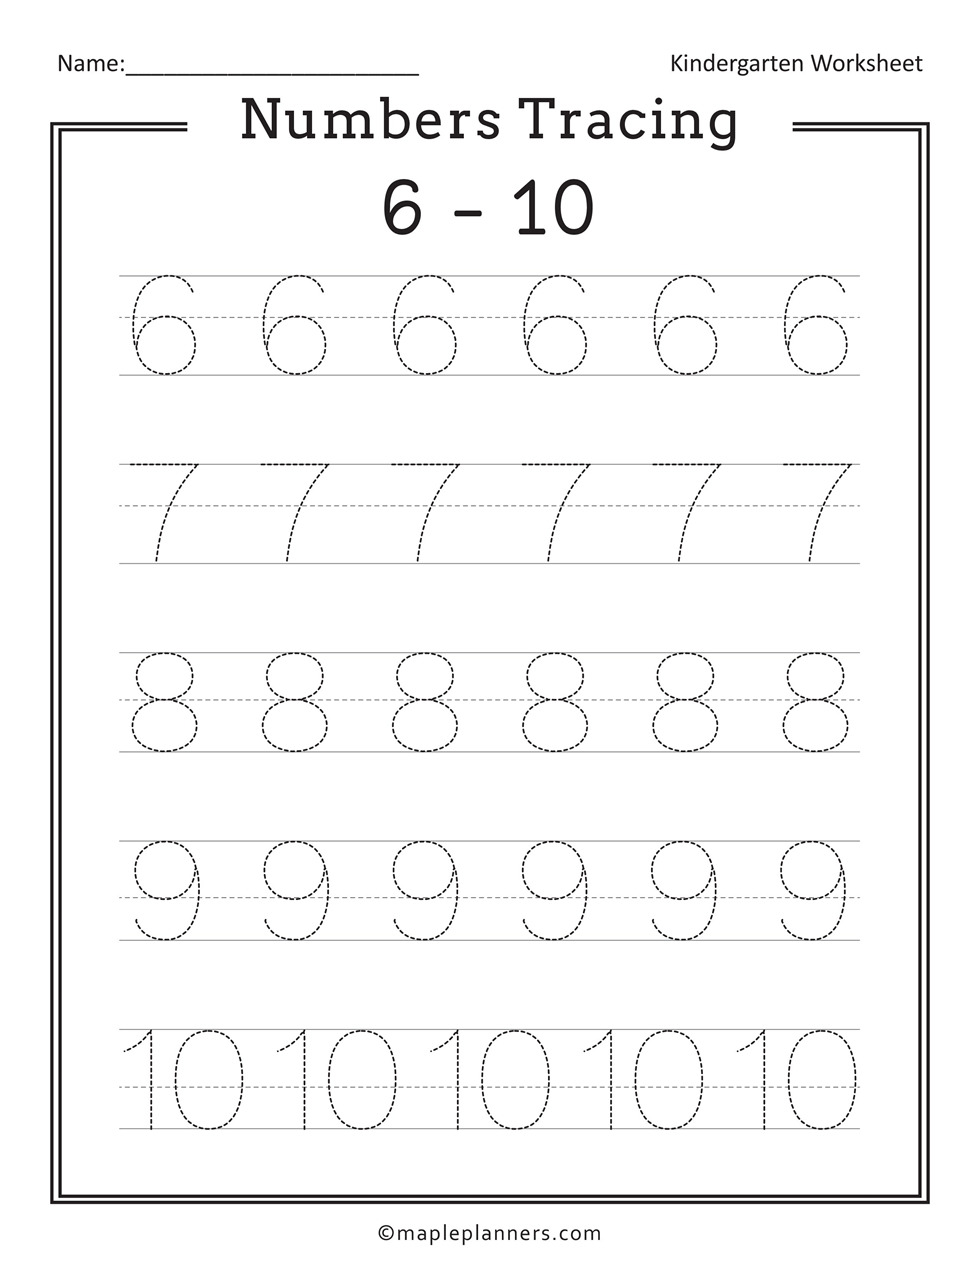 Numbers tracing 6-10 worksheet